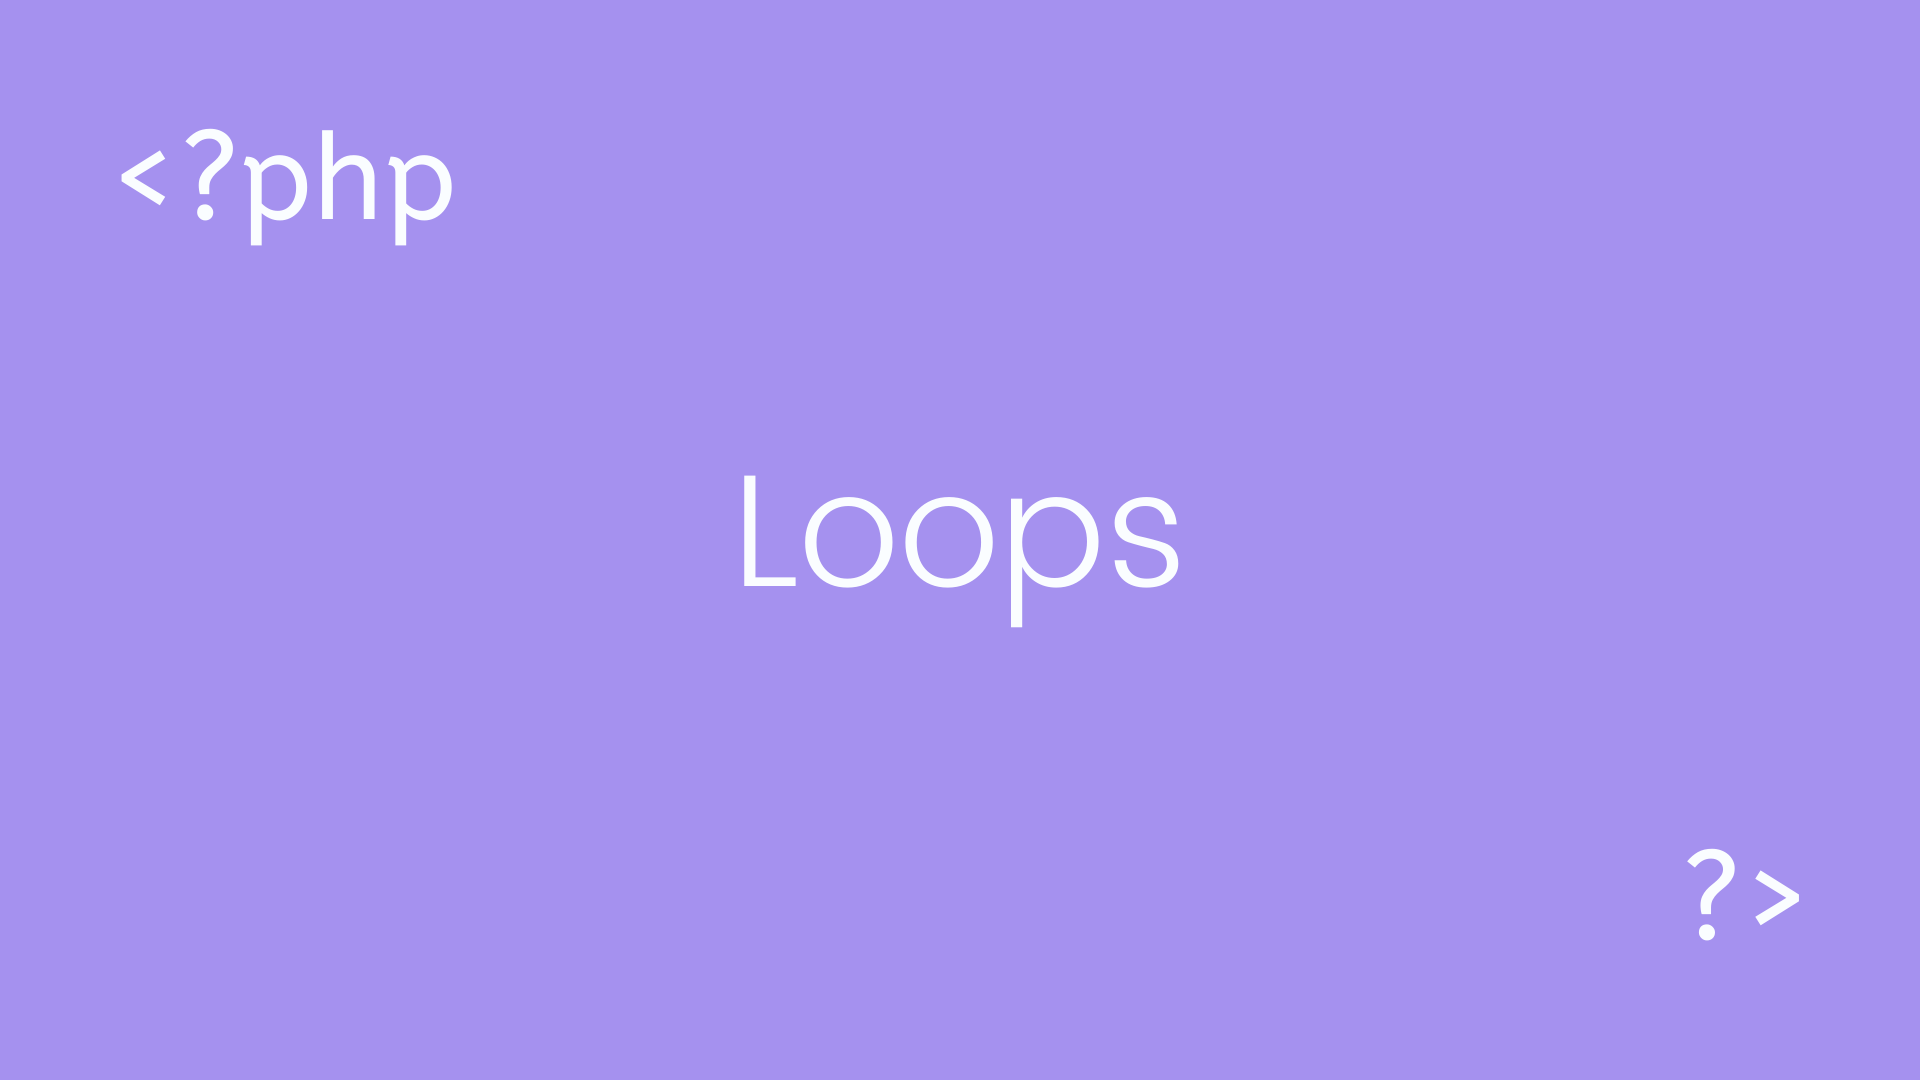 PHP Loops